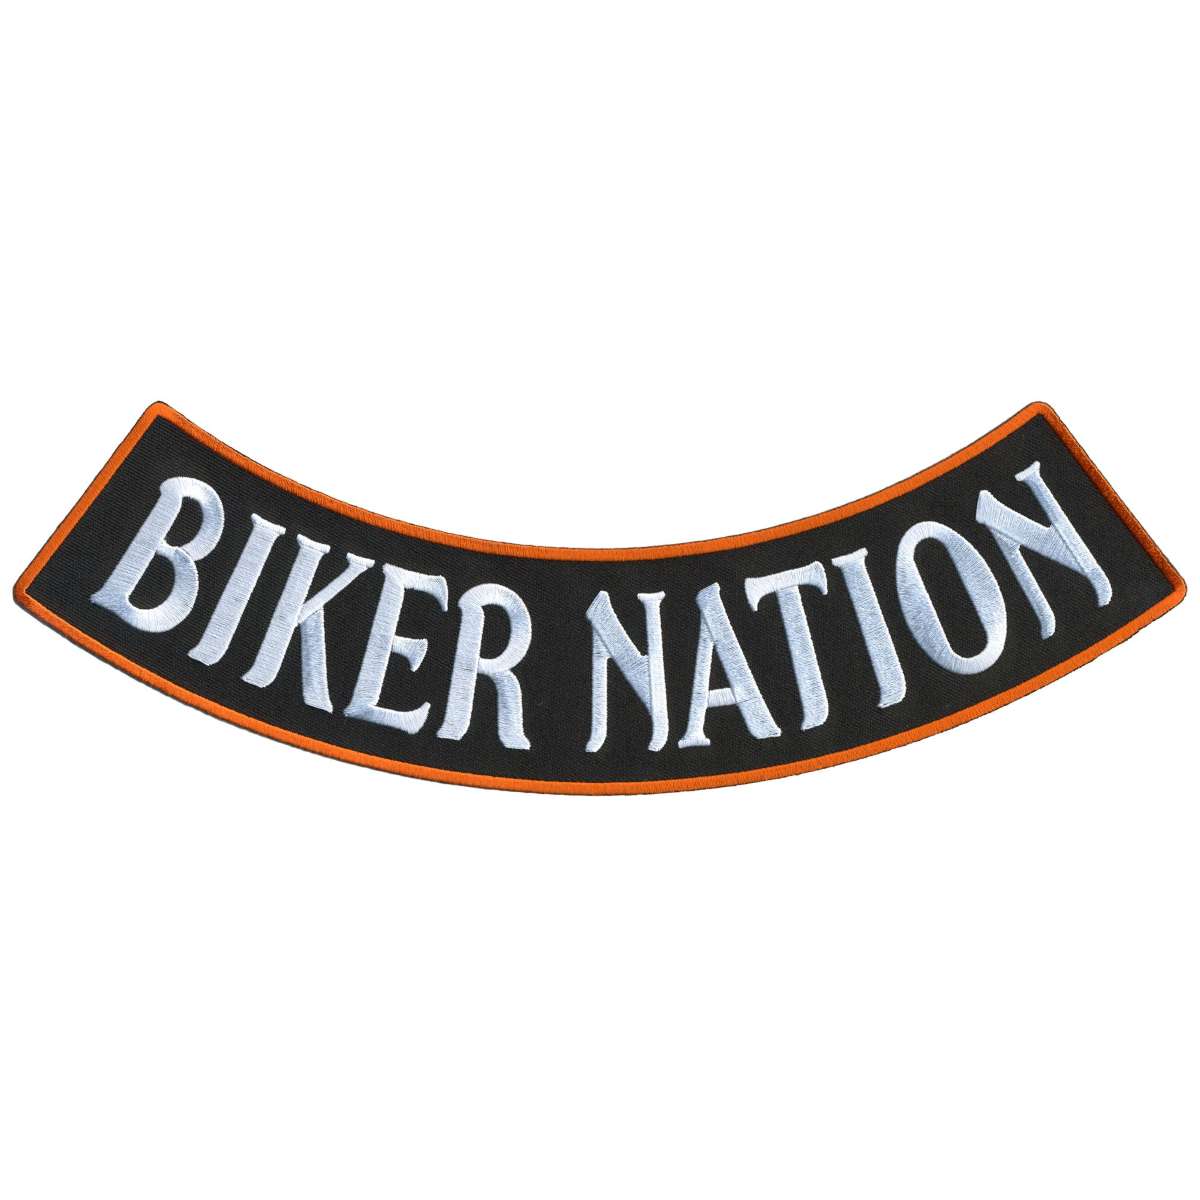 Hot Leathers Biker Nation 12” X 3” Bottom Rocker Patch PPM5183